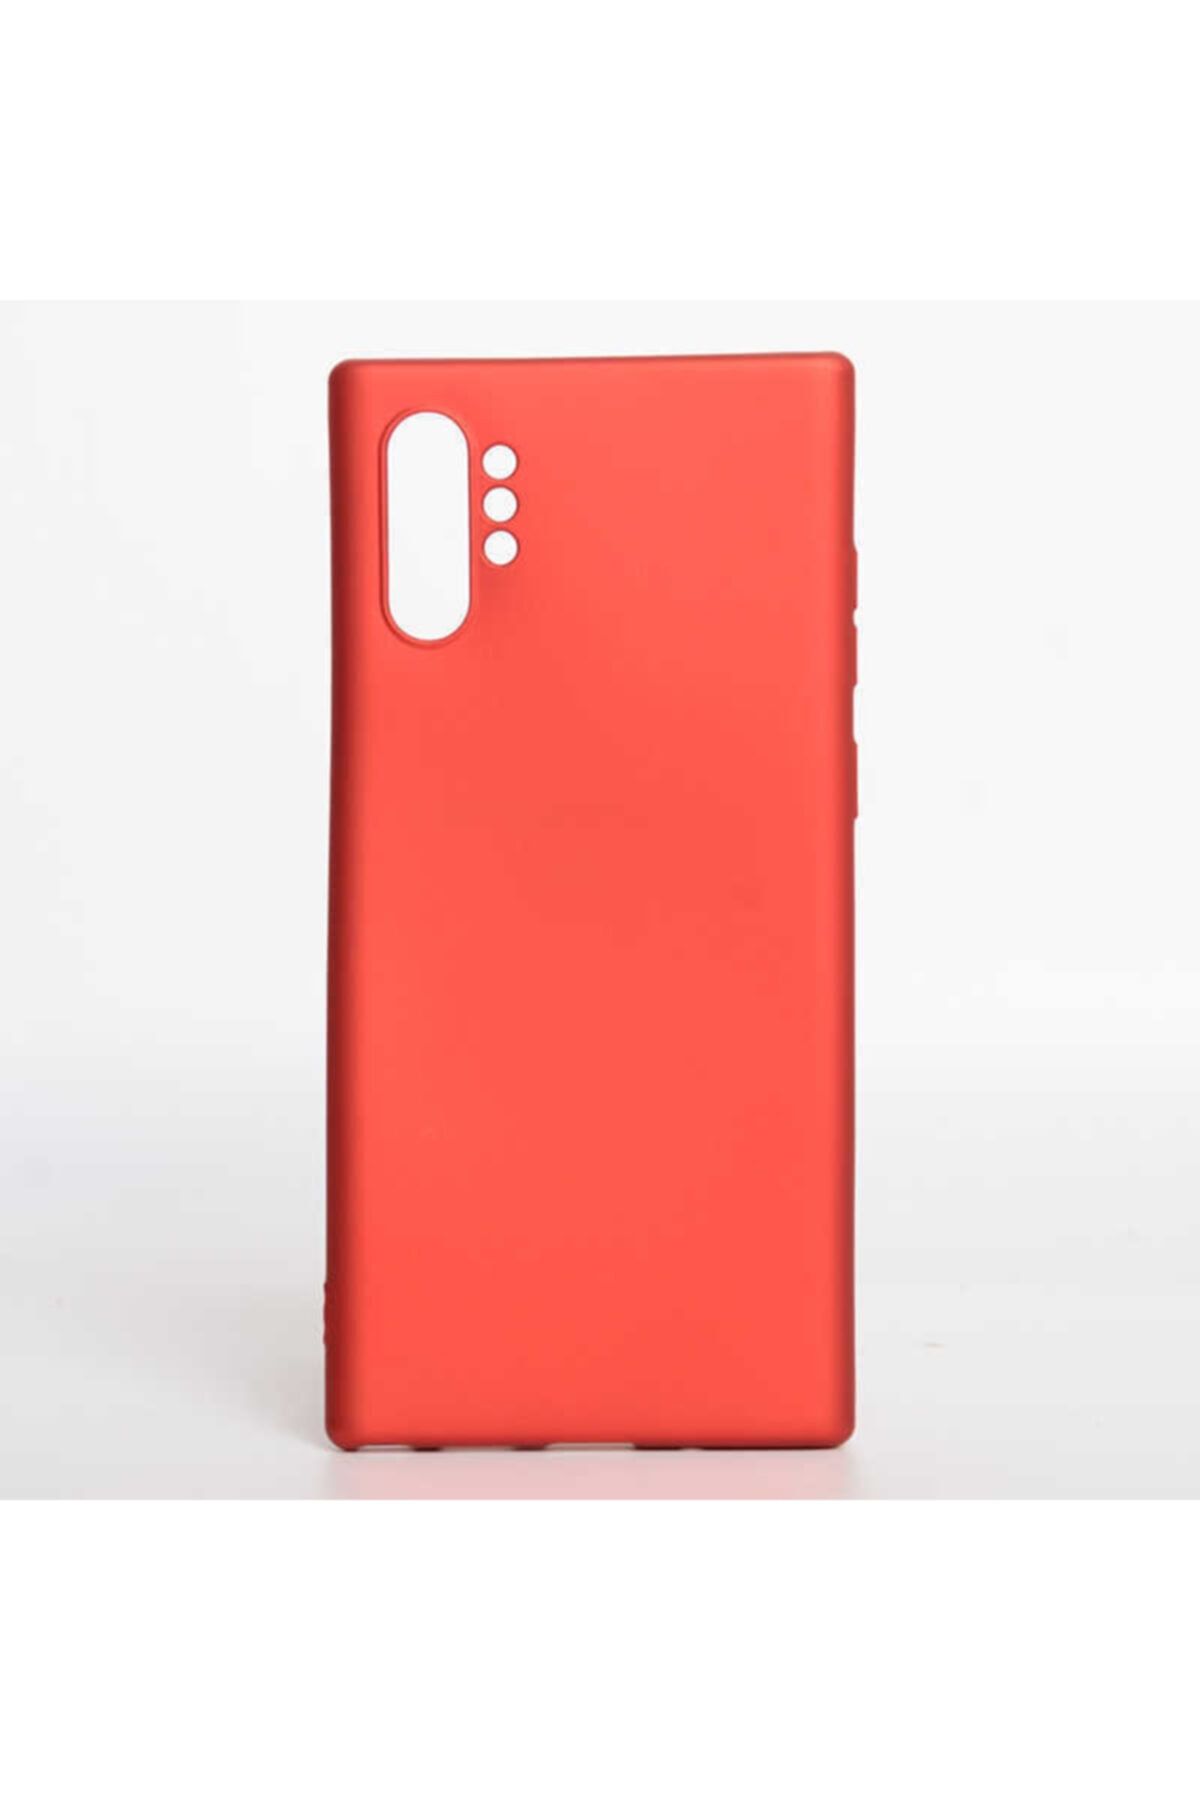 İncisoft Samsung Galaxy Note 10 Plus Kılıf Ultra Ince Silikon Yumuşak Yüzey Arka Kapak Kırmızı